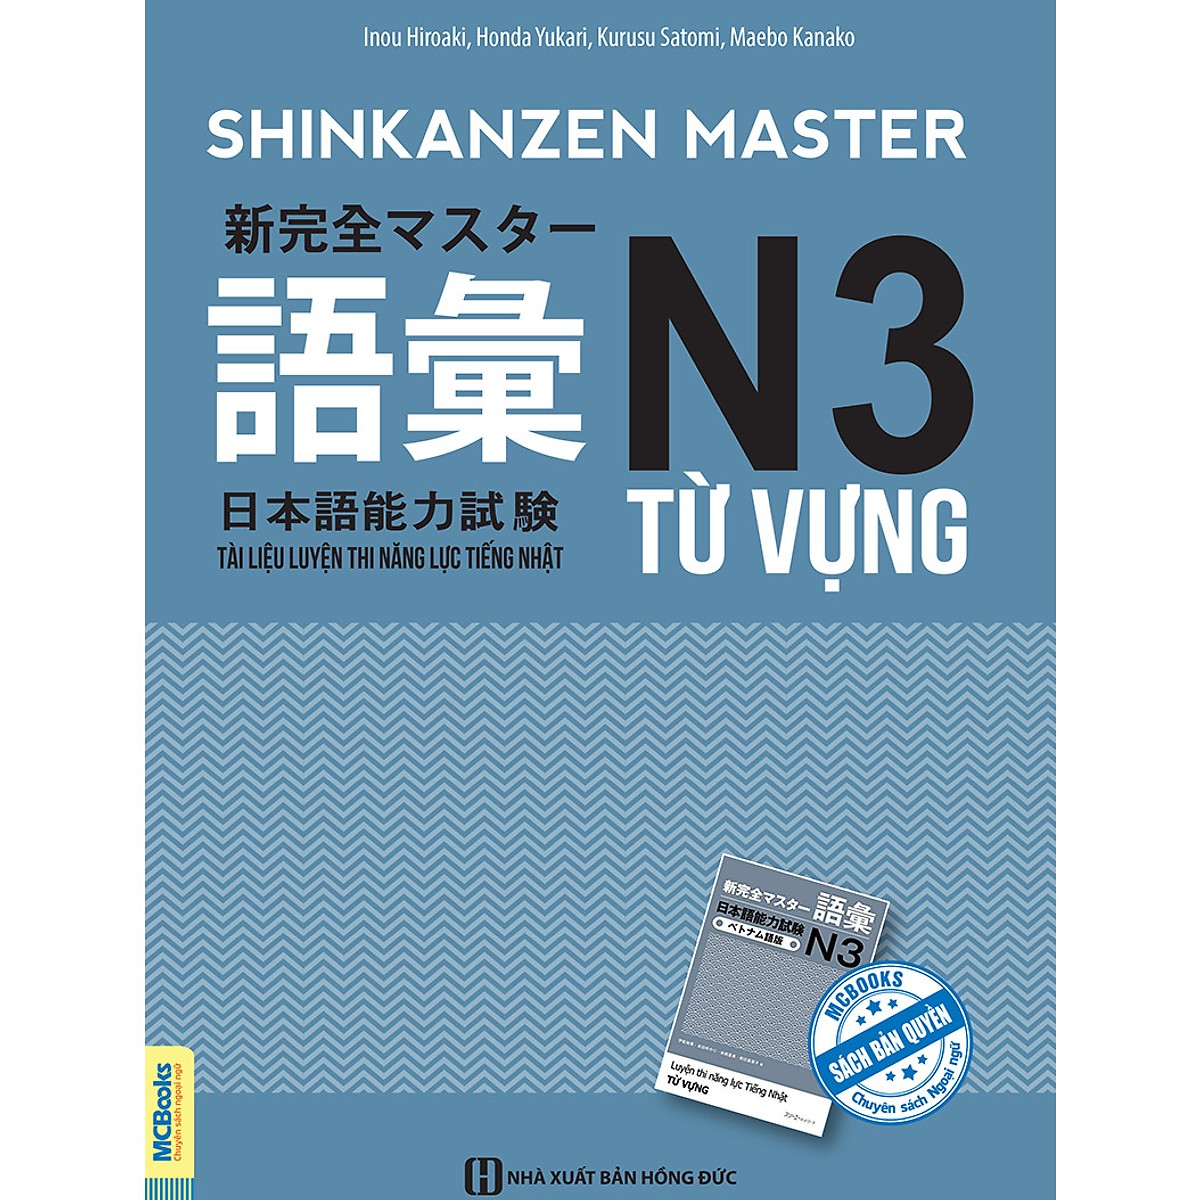 Shinkanzen Master N3 Từ Vựng -Tài Liệu Luyện Thi Năng Lực Tiếng Nhật N3 Từ Vựng (Học Kèm App: MCBooks Application) (Tặng Kèm Bút Hoạt Hình Cực Xinh)